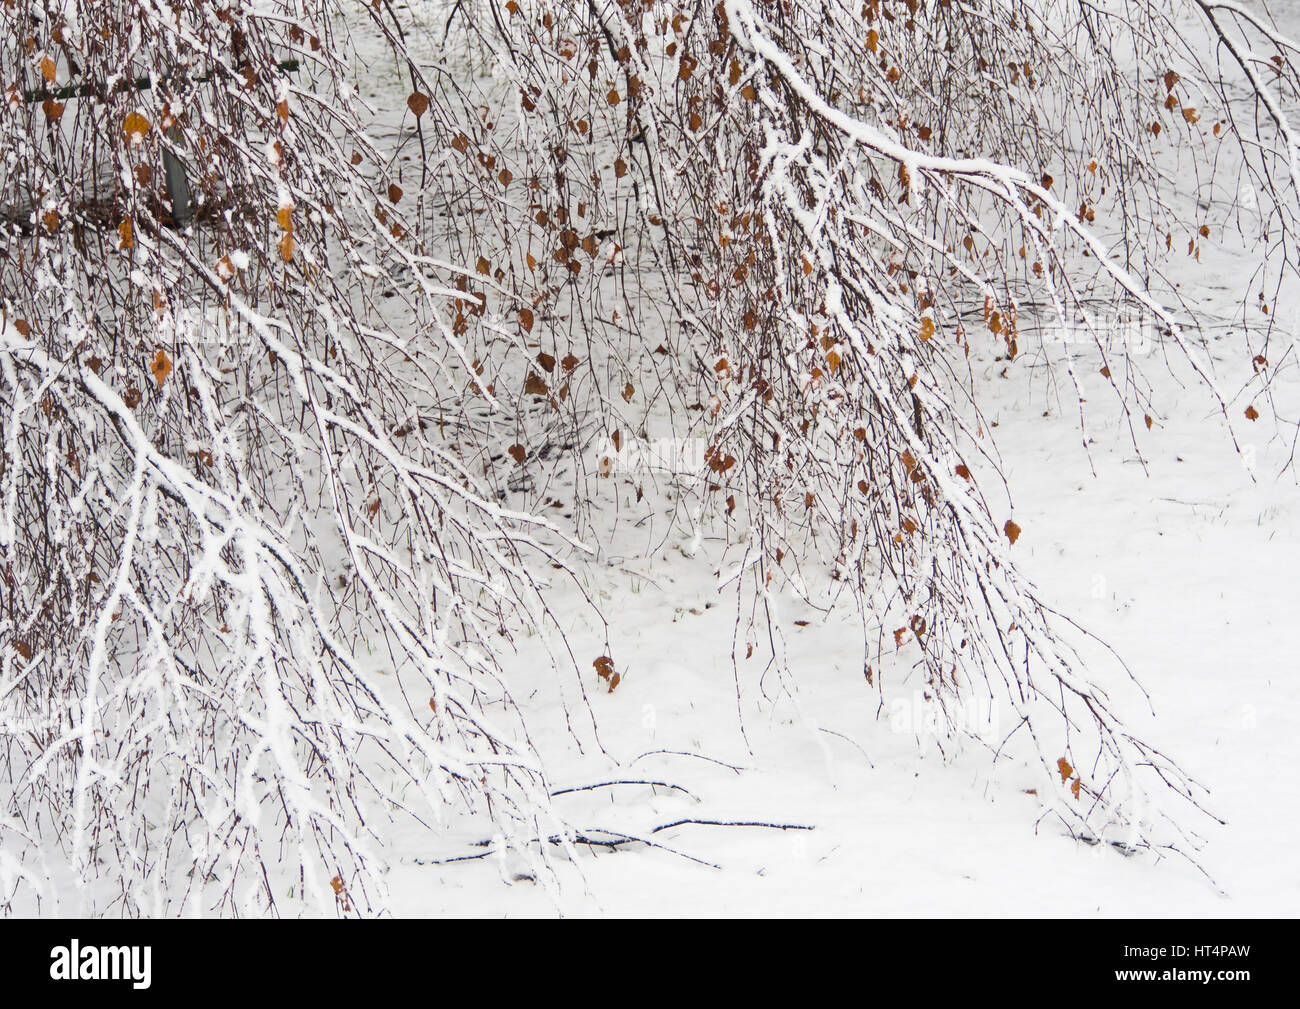 L'hiver à Oslo en Norvège, un bouleau blanc Betula pendula porte encore quelques feuilles sèches, son couvert de neige des branches et brindilles touche le sol Banque D'Images